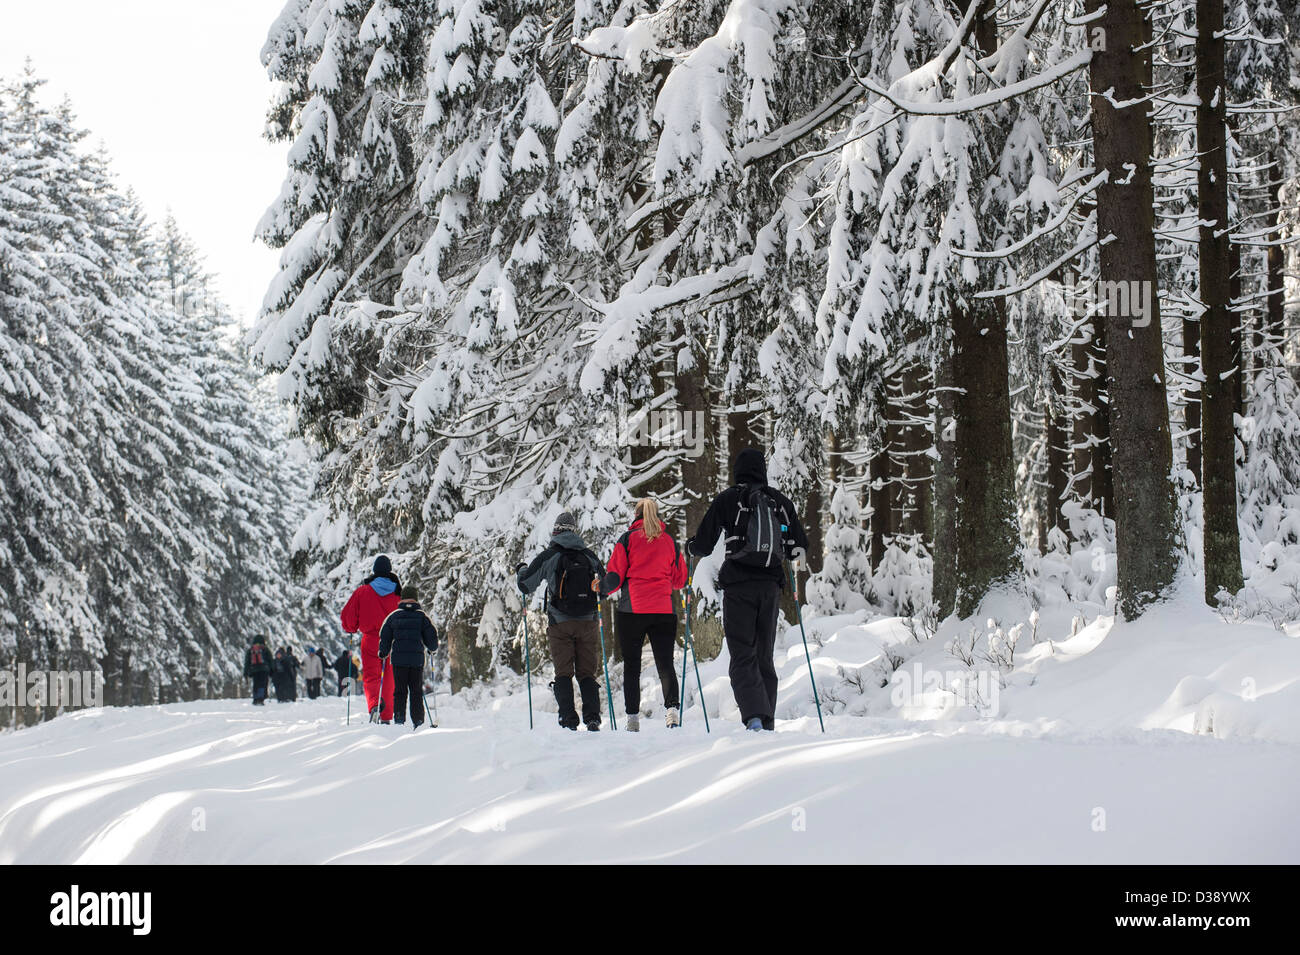 Les skieurs de fond Le ski en forêt de pins dans la neige en hiver à la Hautes Fagnes / Hautes Fagnes, Ardennes Belges, Belgique Banque D'Images